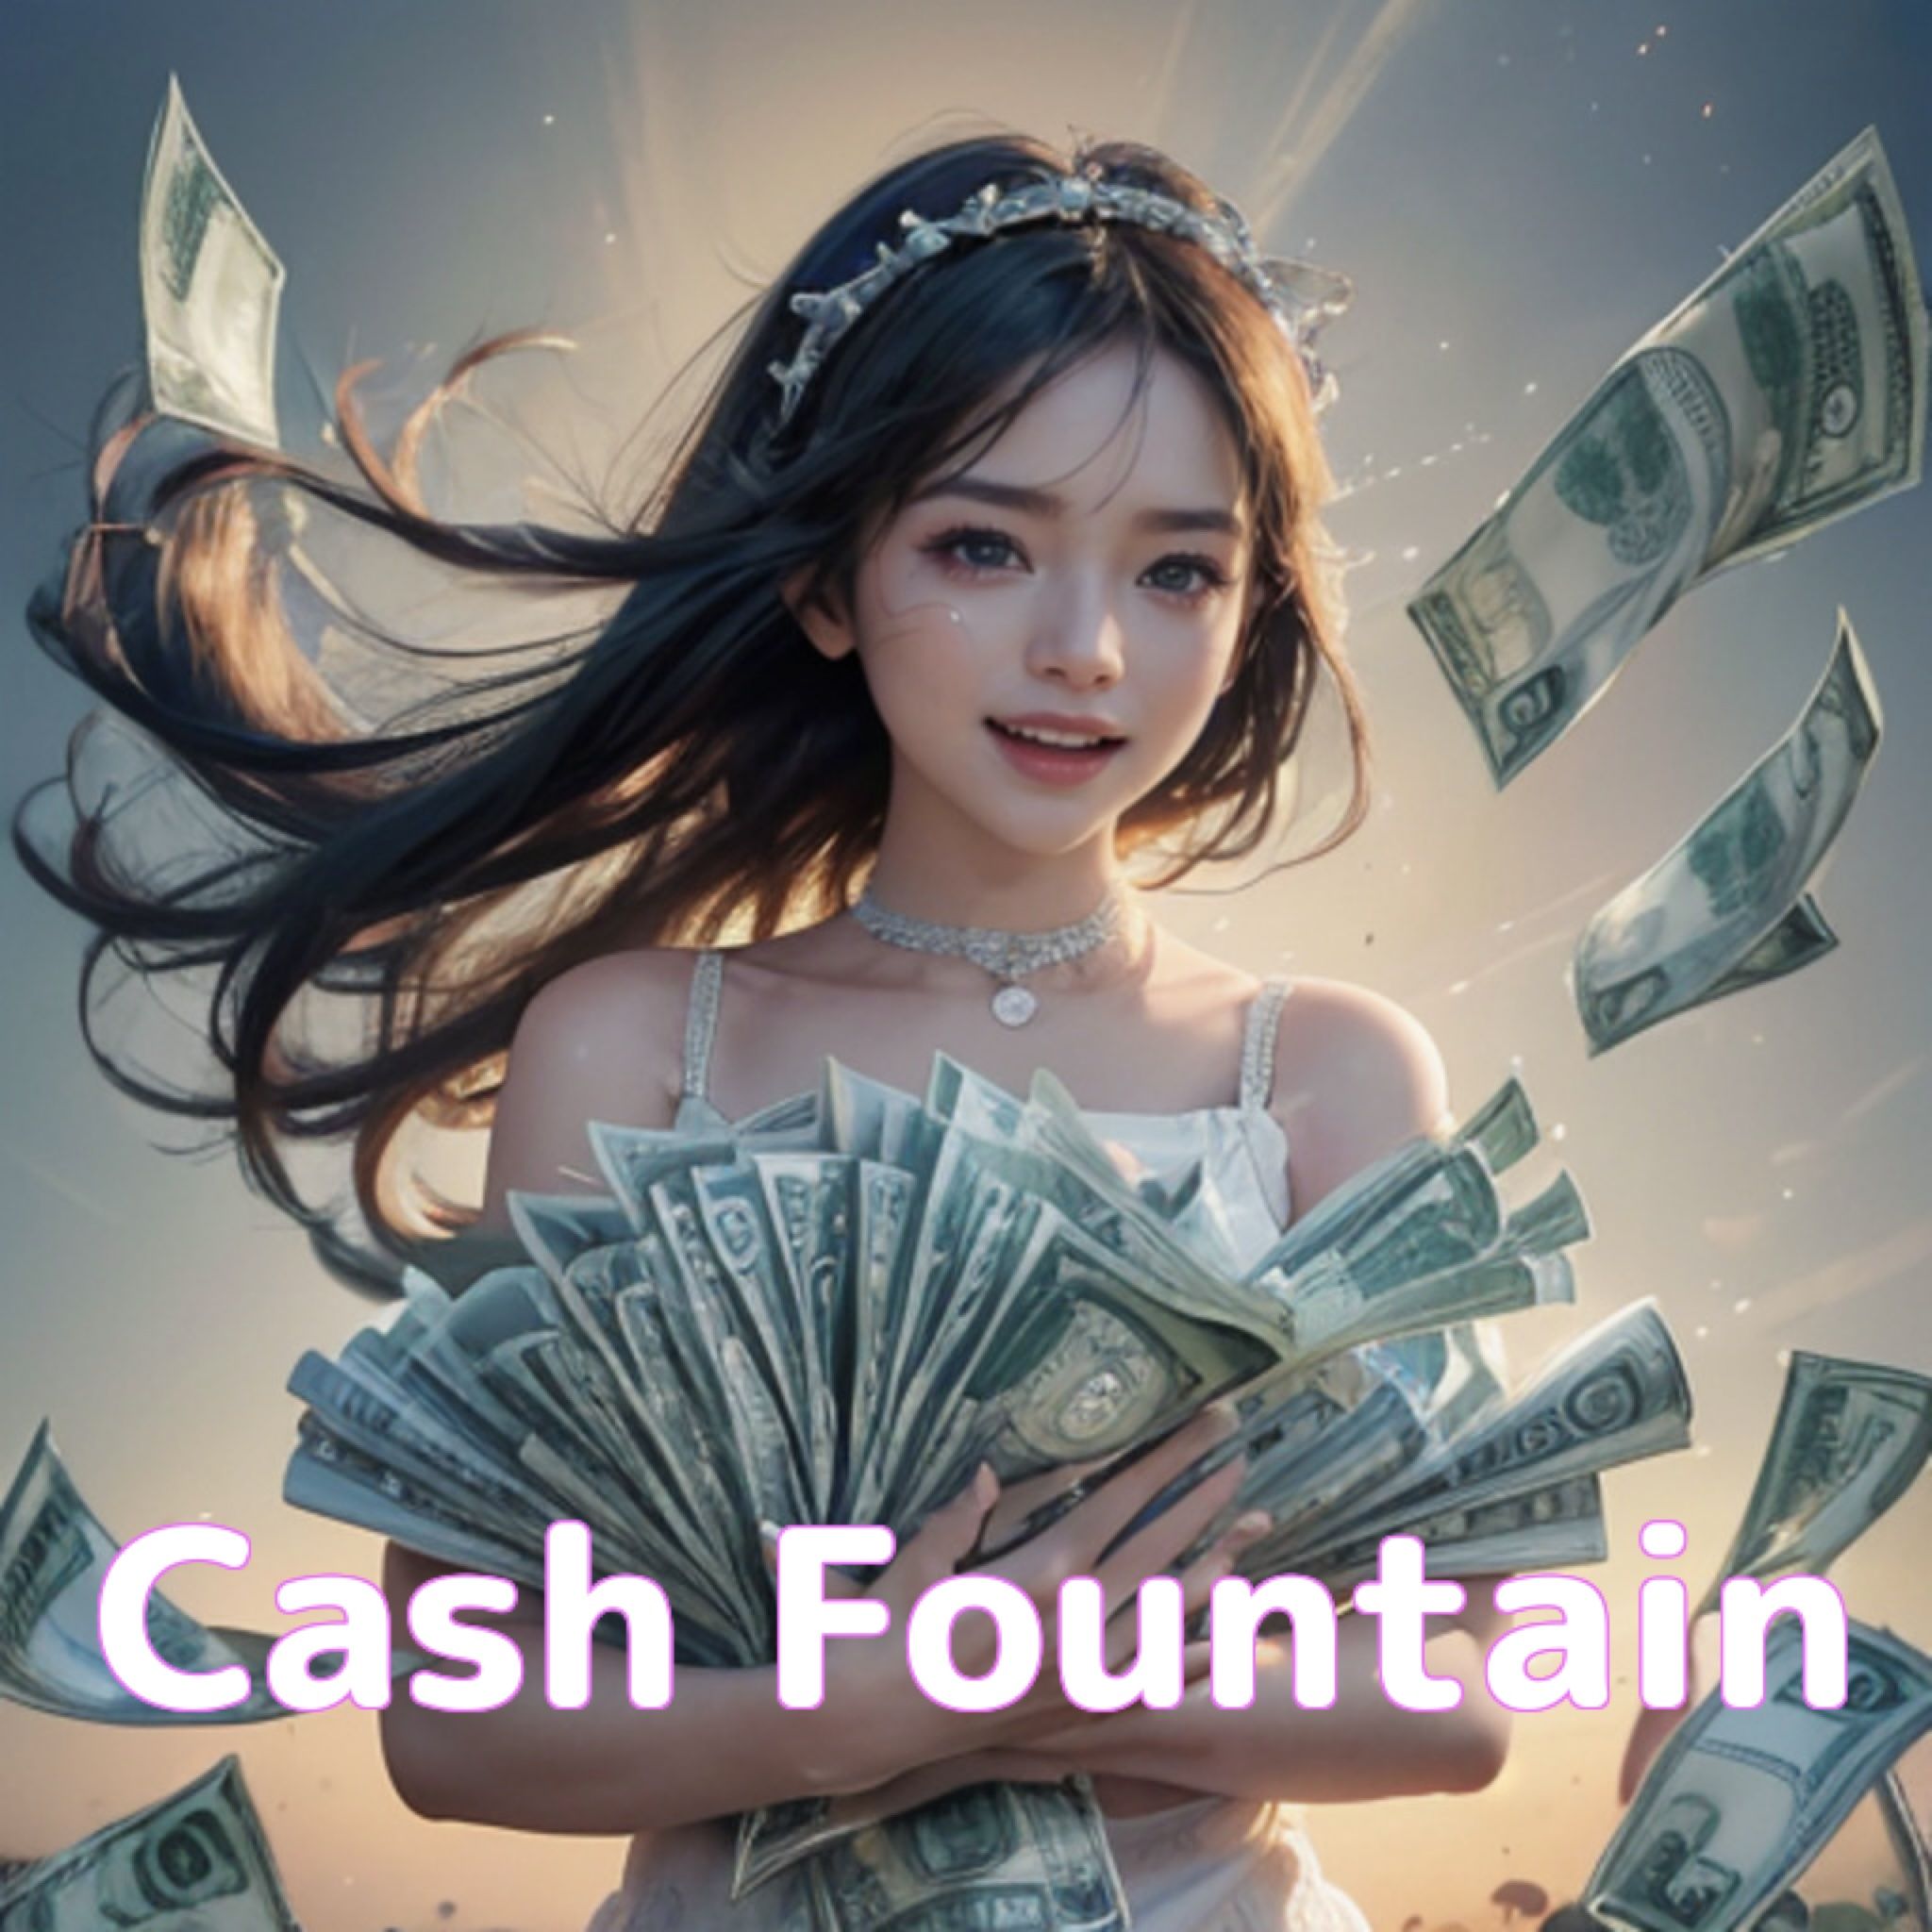 Cash Fountain Auto Trading